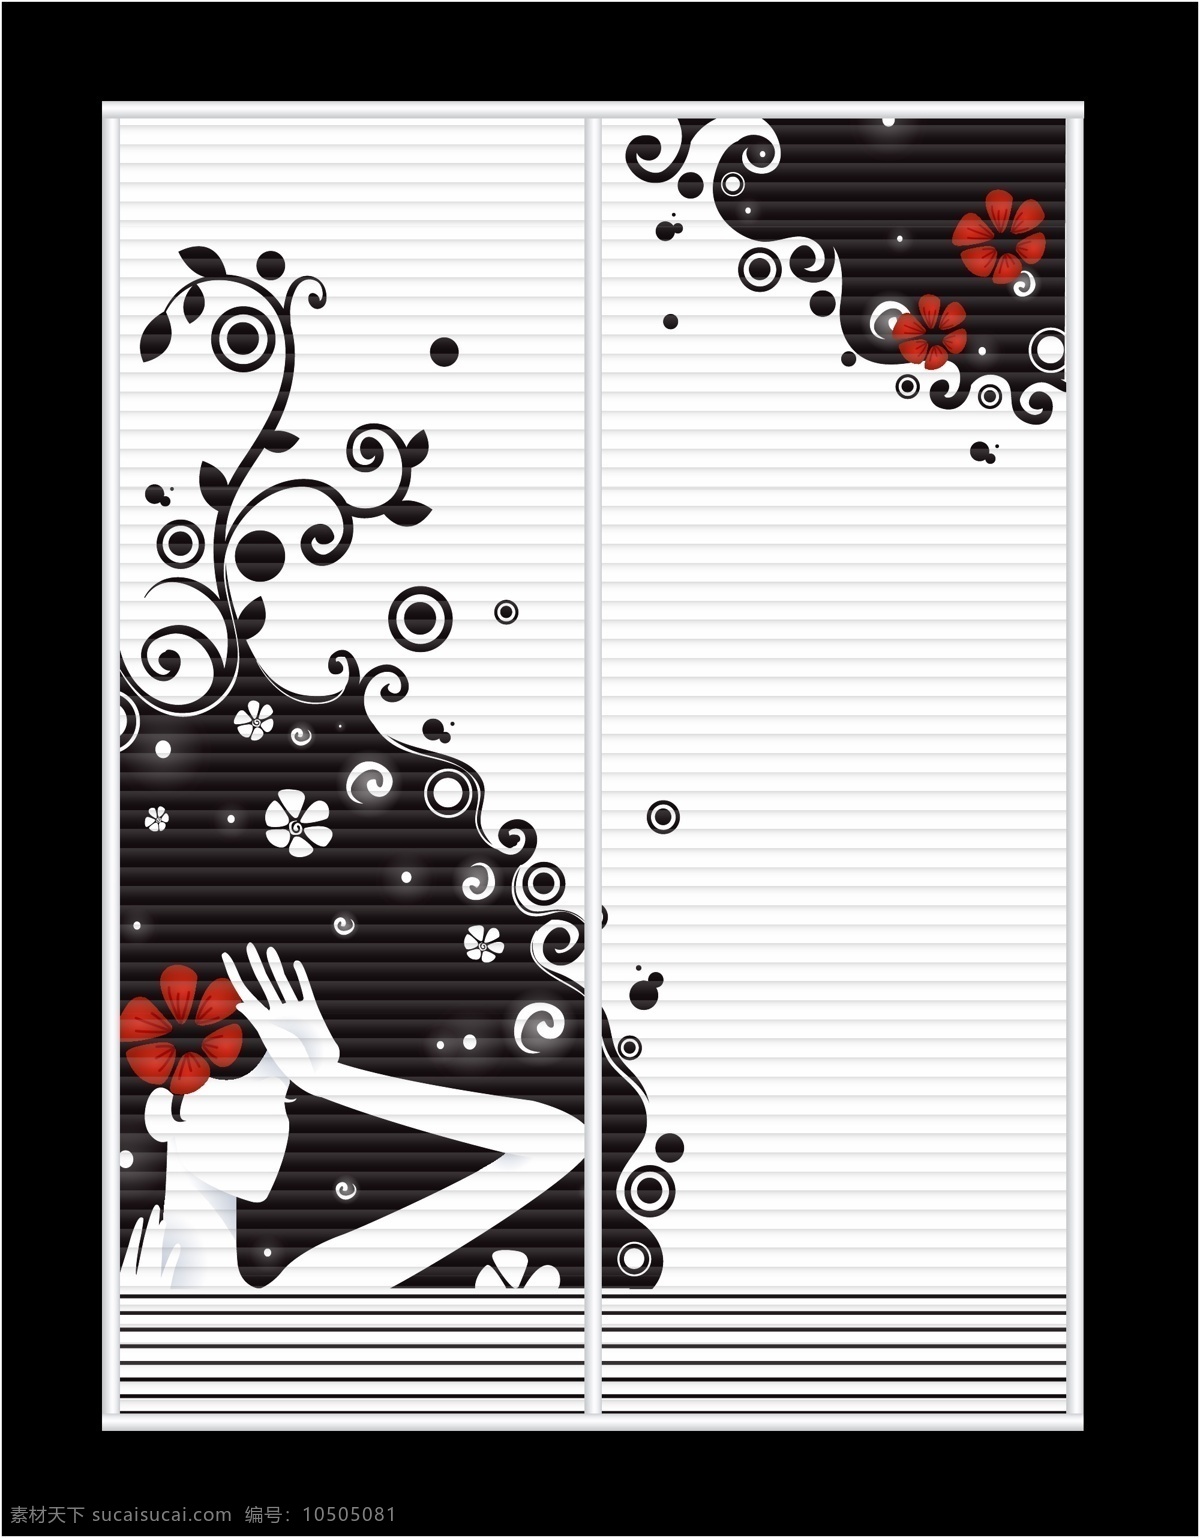 黑色花纹 黑白 女孩 花纹 线条 树叶 红花 波浪板 百叶窗 移门图案 矢量